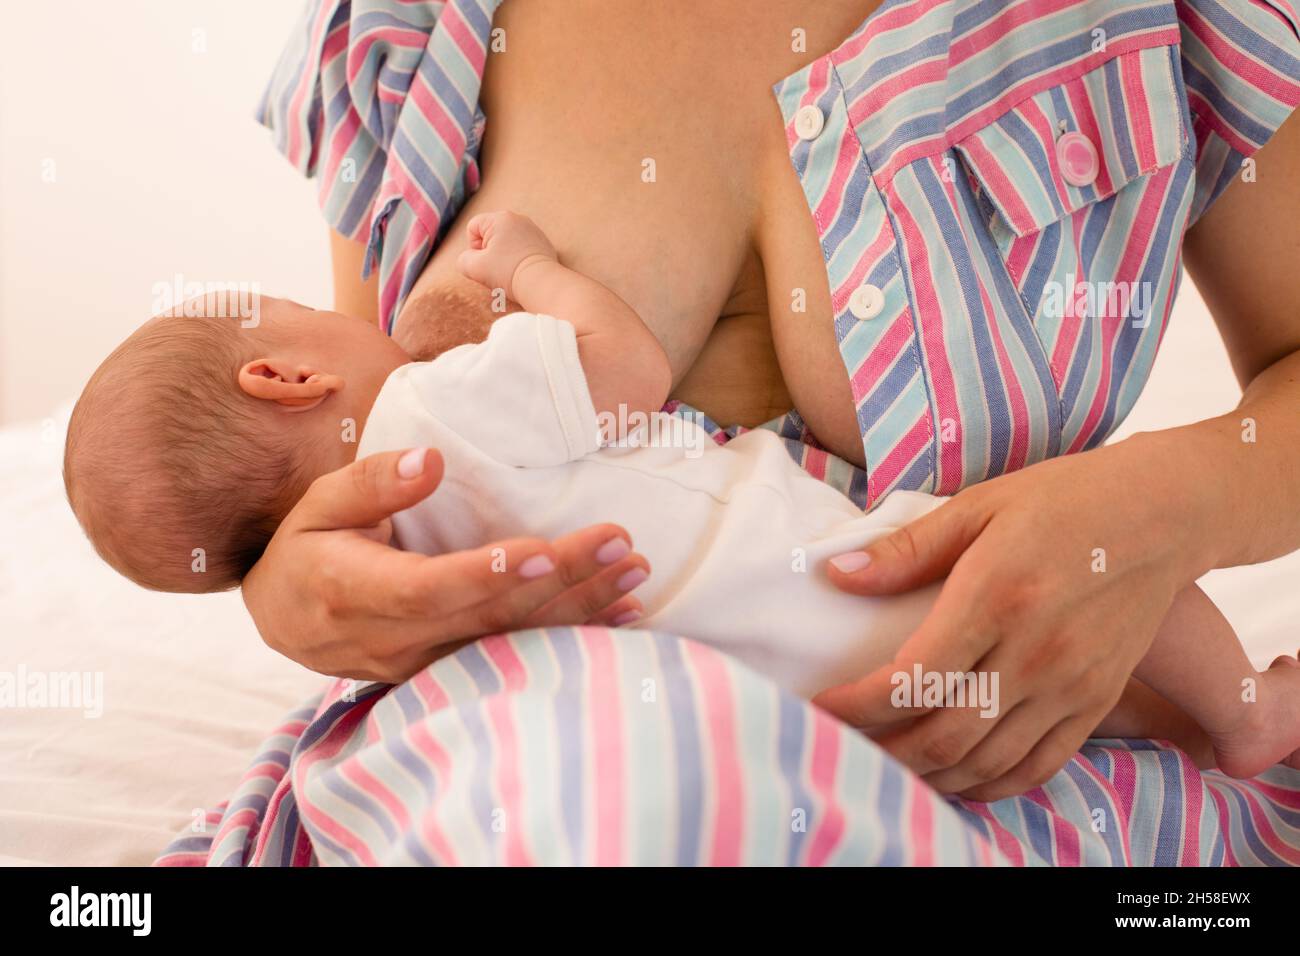 Die Mutter stillt ihr neugeborenes Baby auf dem Bett Stockfoto